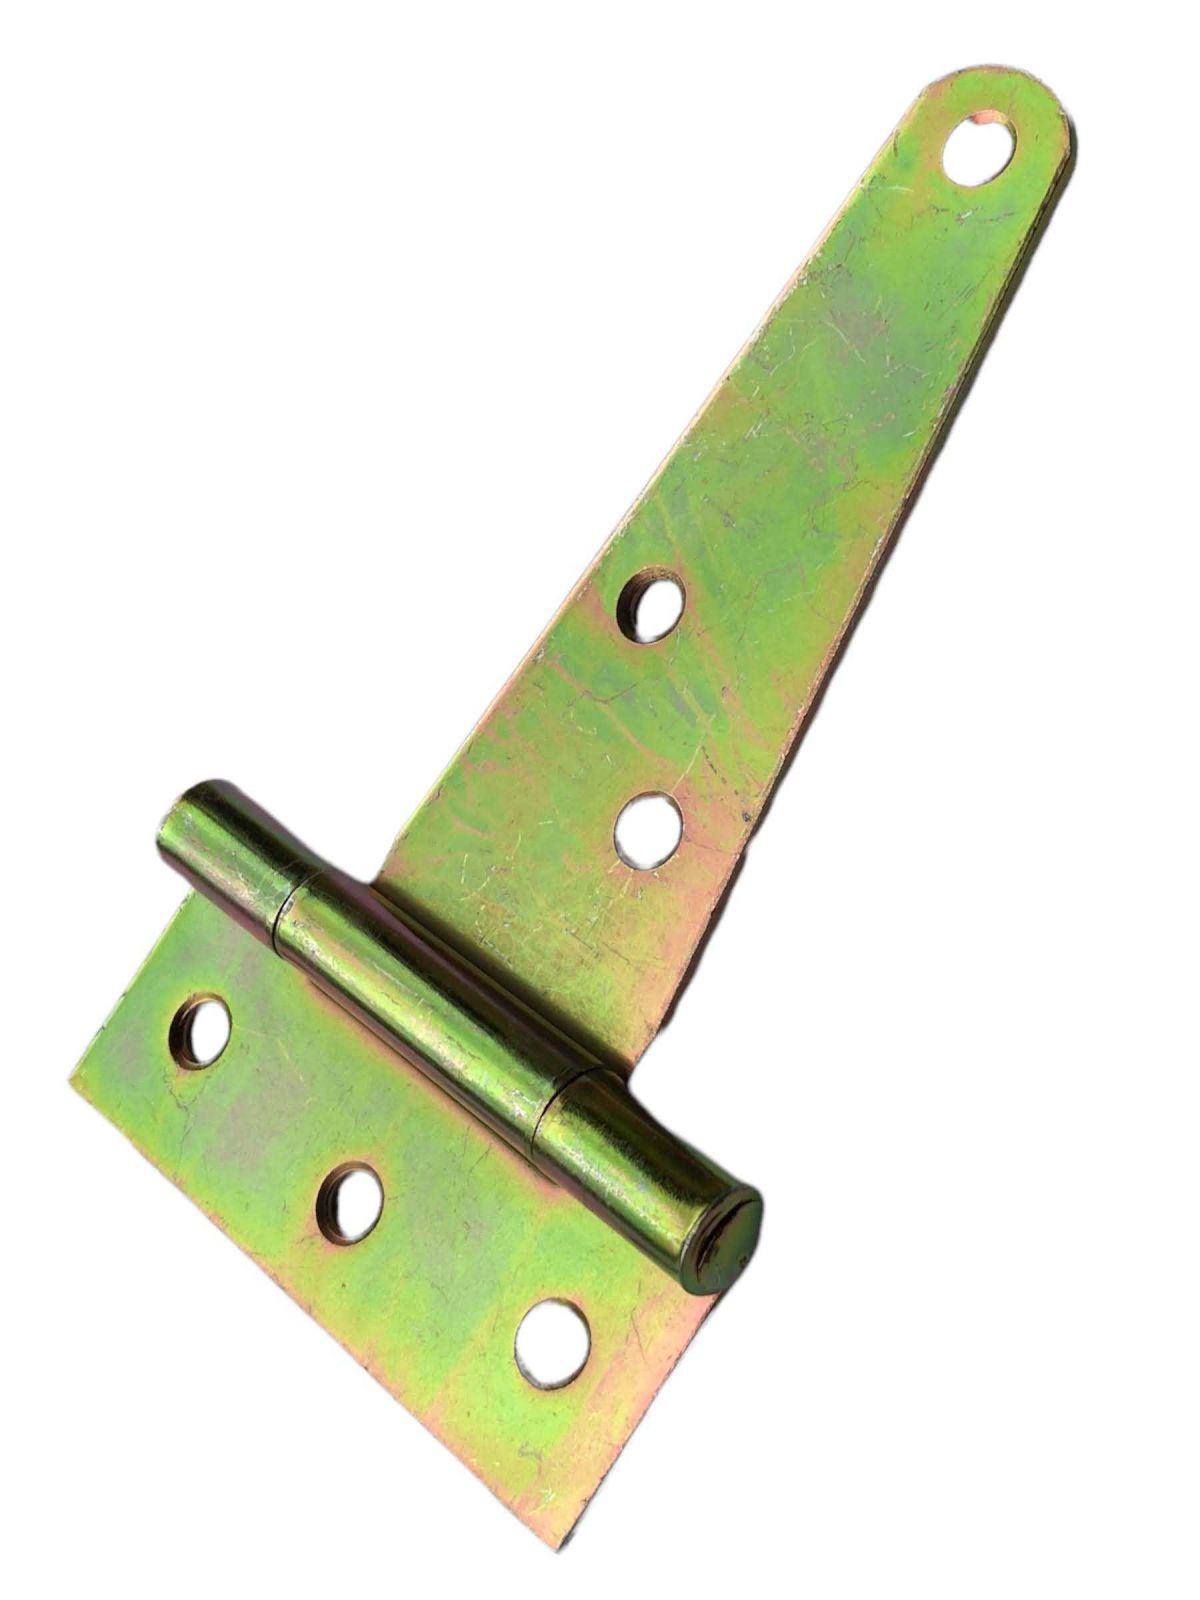 Závěs - pant ocelový na dřevěné vrata - typ T, 220x34x88mm, Zn. žlutý